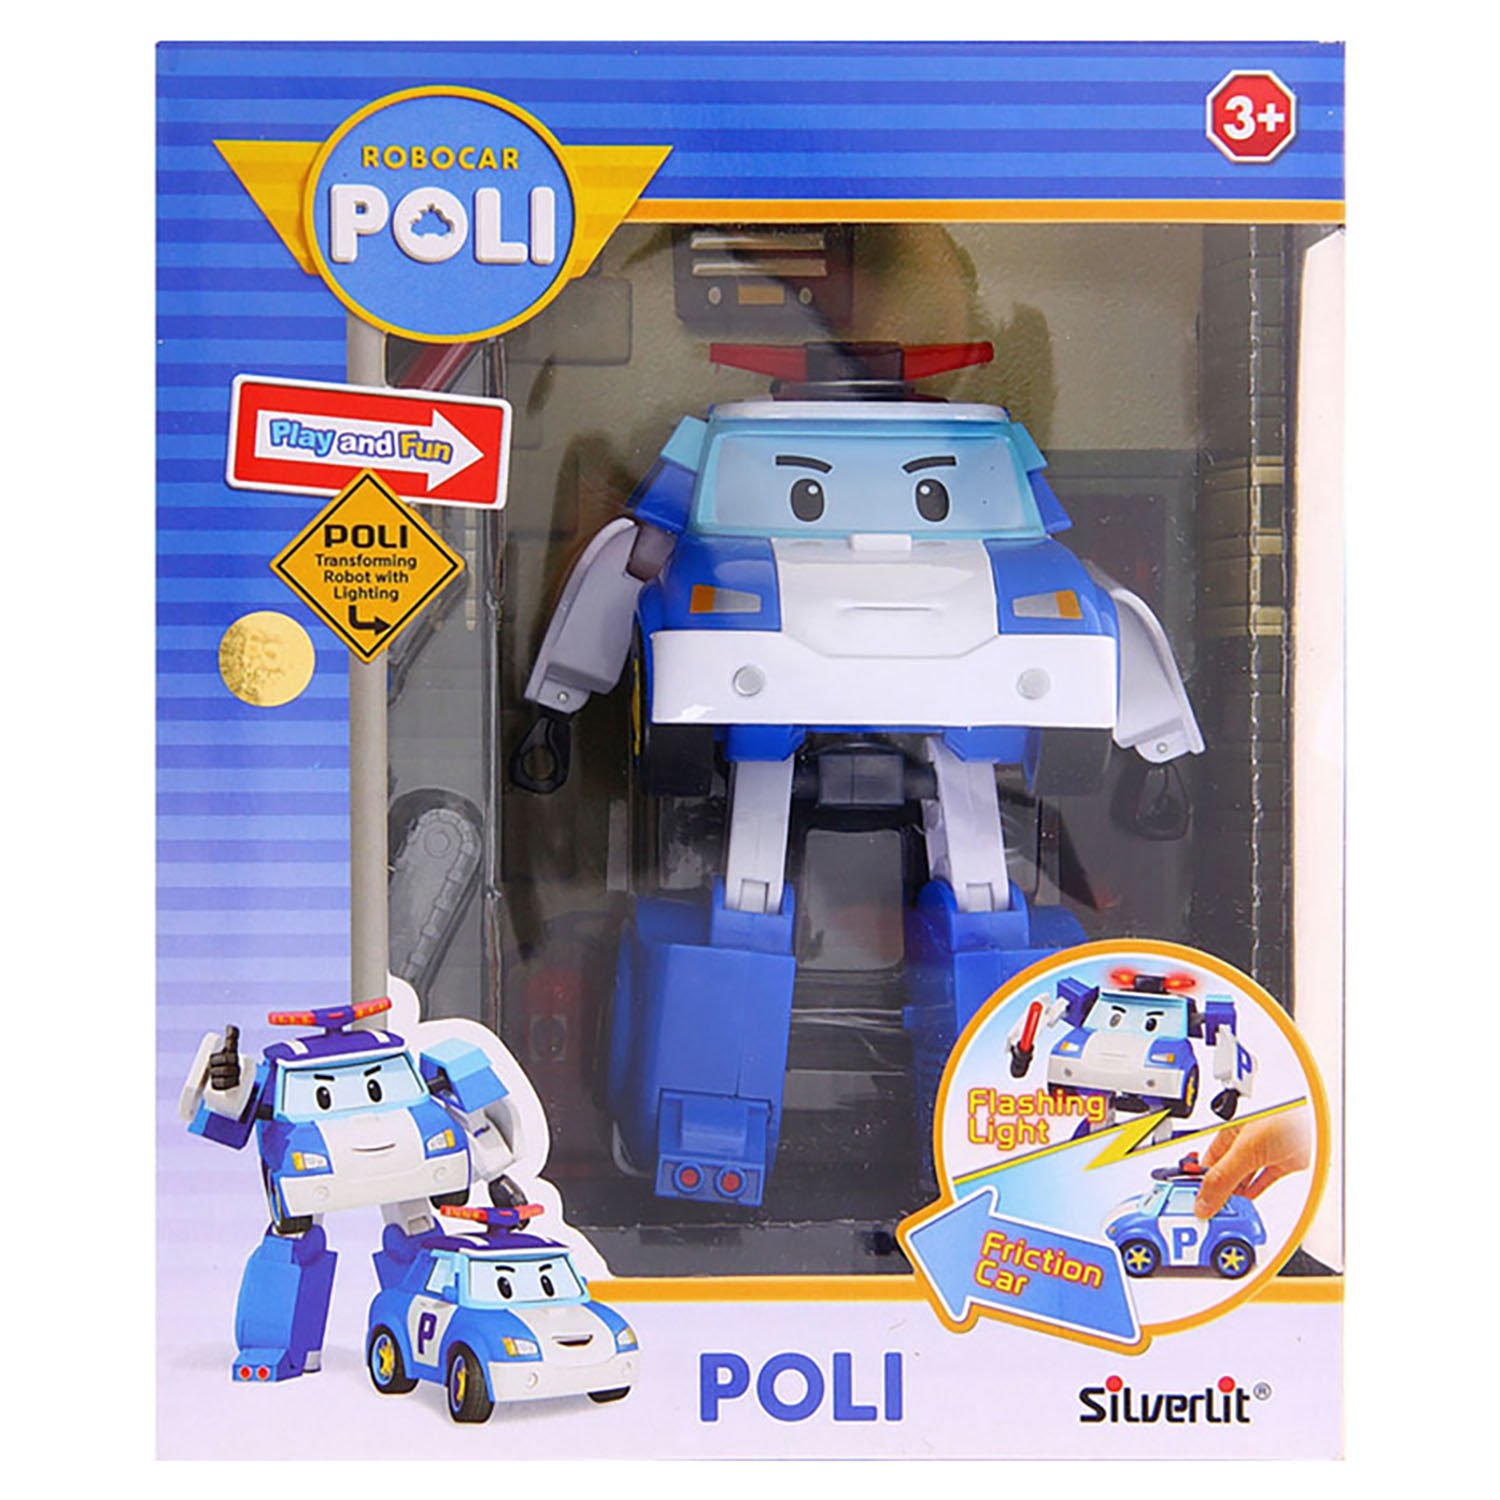 Купить игрушку робокары. Трансформер Silverlit Robocar Poli 7.5 см. Robocar Poli трансформер Поли (7,5см) 83046. Поли трансформер (12,5 см) свет + инструменты. 83046 Поли трансформер (7,5 см).